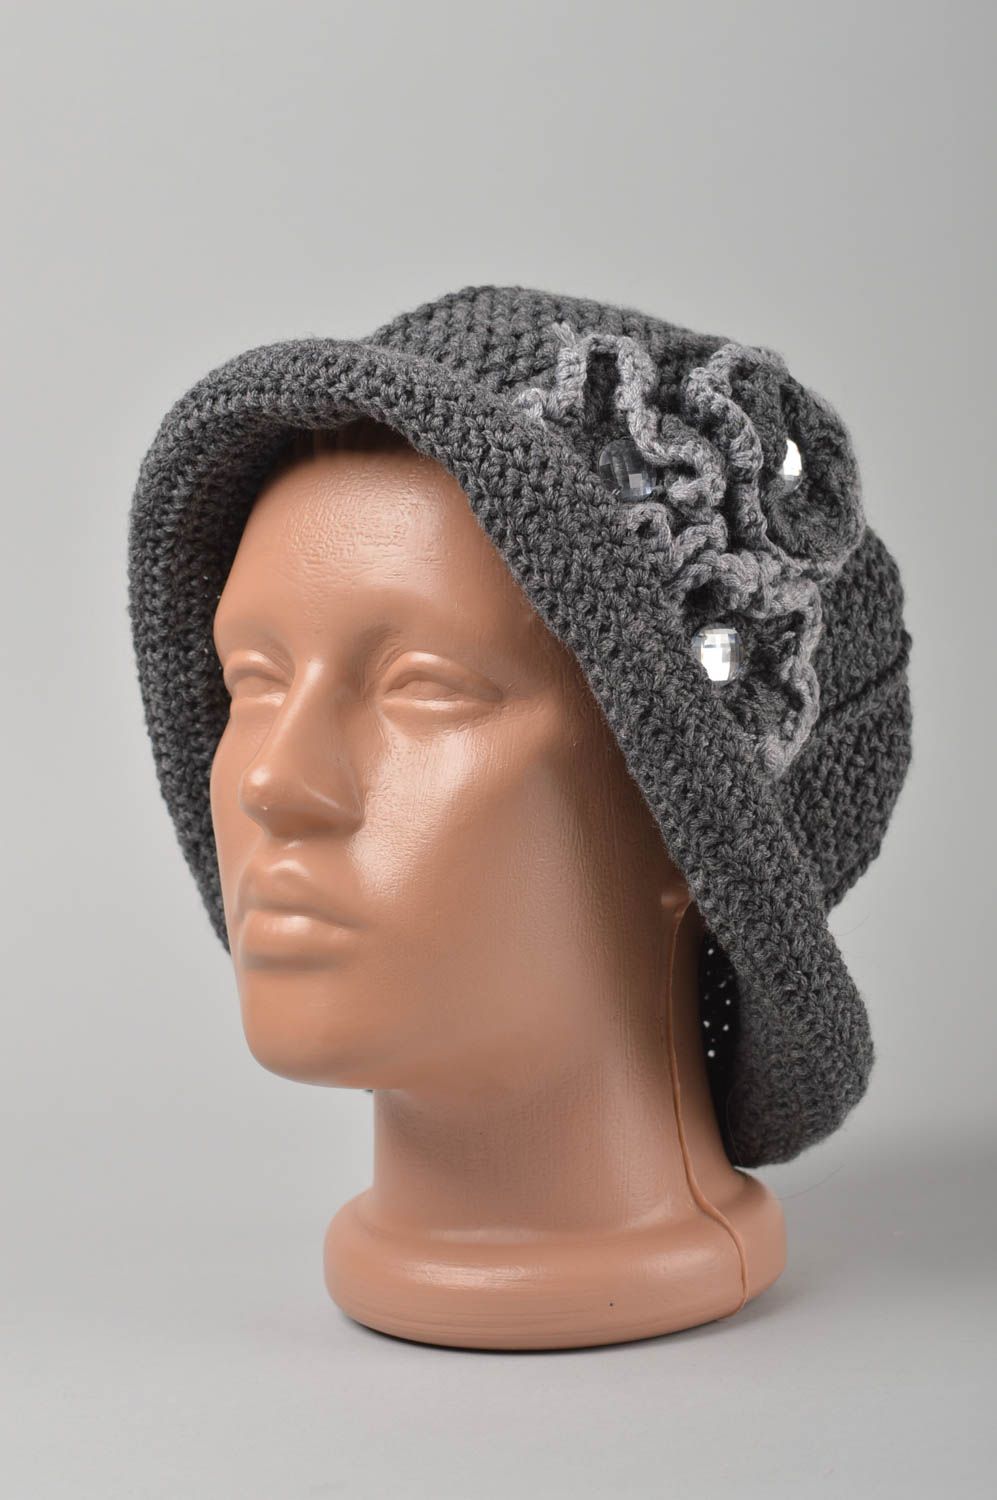 Handmade hat crocheted hat designer hat for women beaded hat gift ideas photo 1